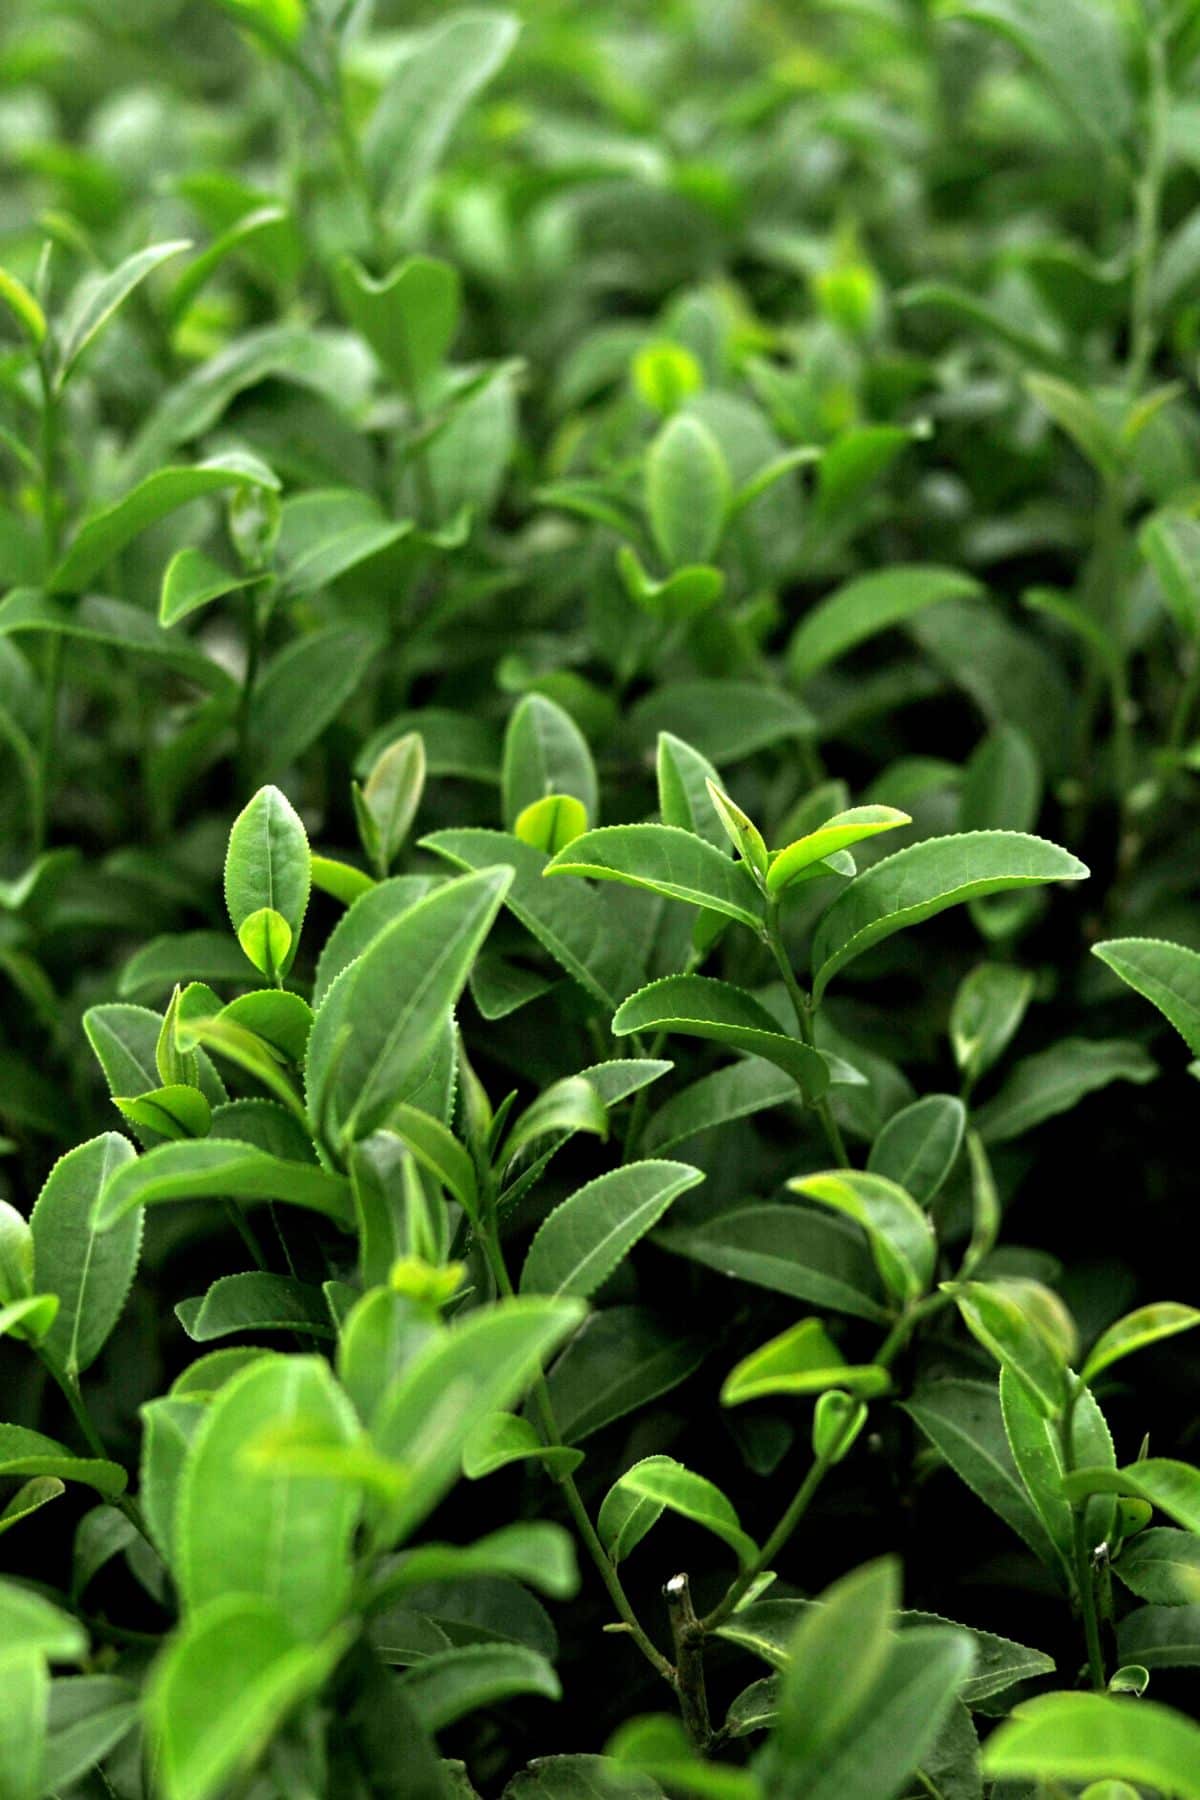 green tea leaves growing in a field.